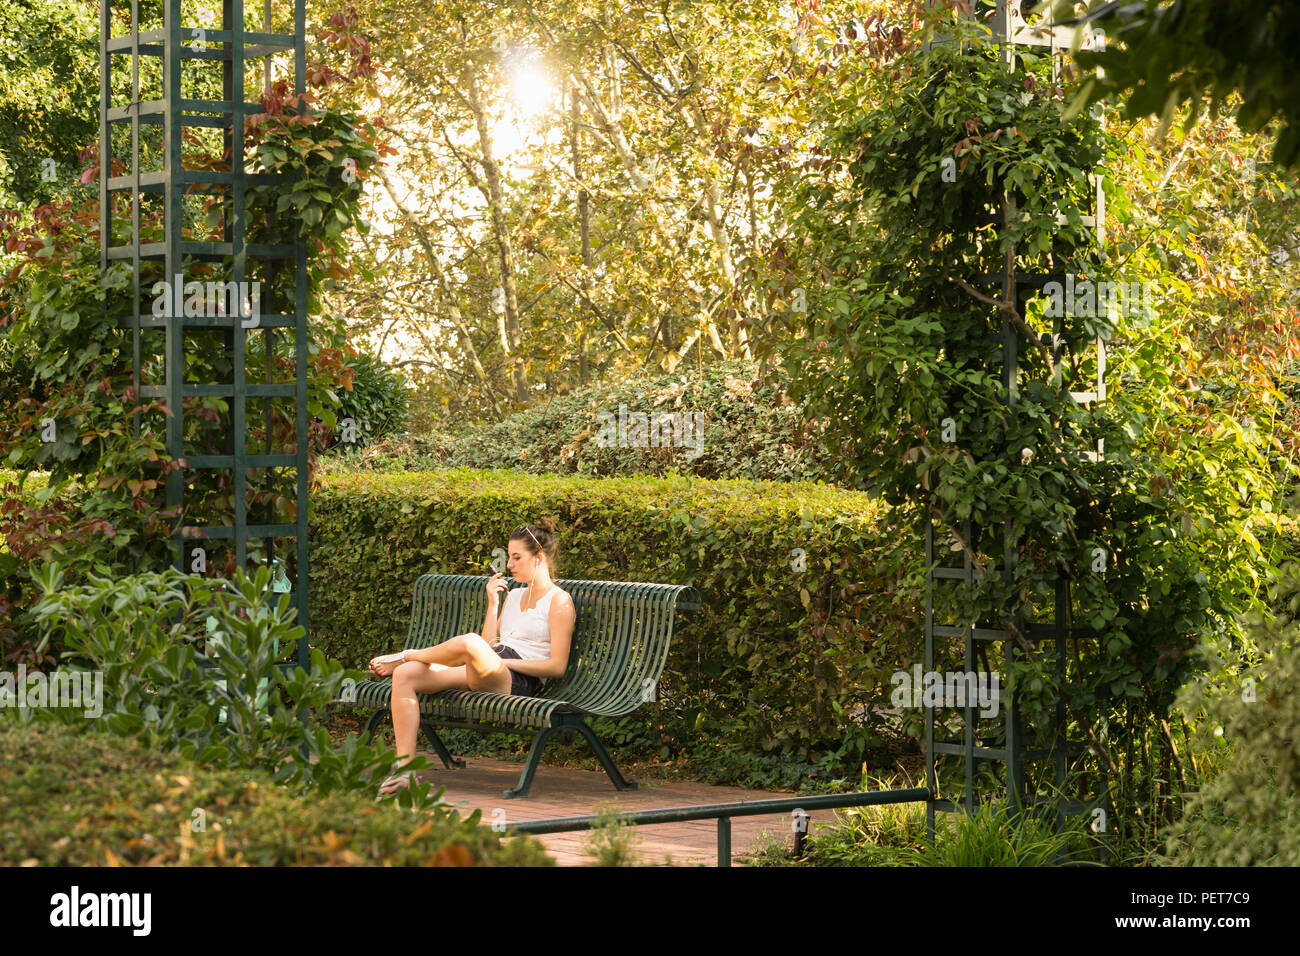 Parigi verde e giardino urbano - una giovane donna che parla al telefono presso la Promenade plantee parco elevata nel dodicesimo arrondissement di Parigi, Francia. Foto Stock